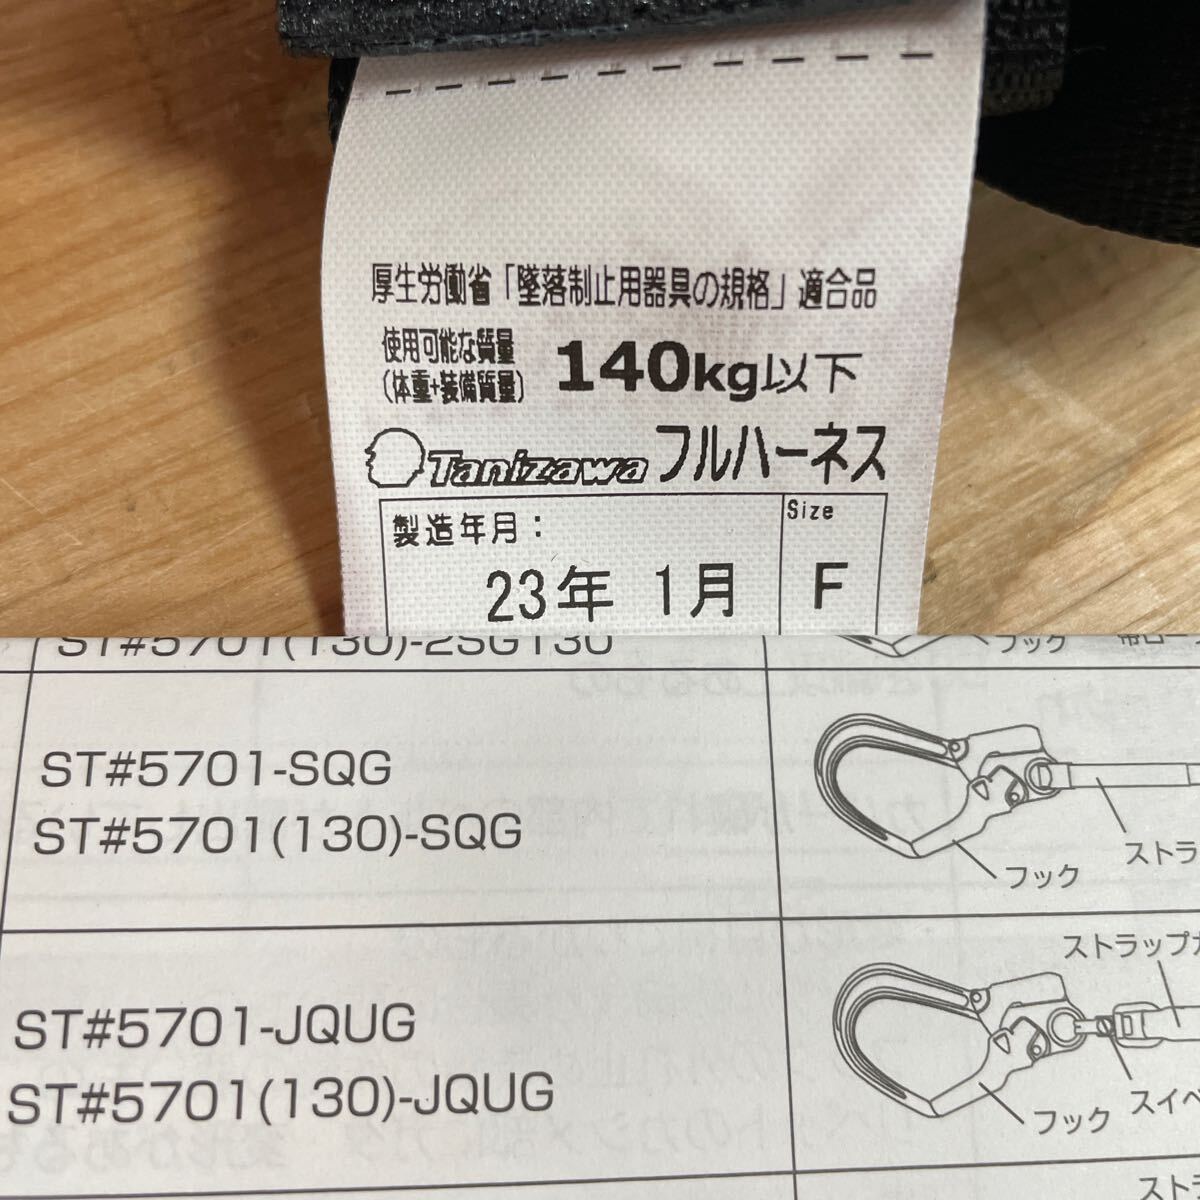  unused goods *TANIZAWAtani The wa safety belt full Harness + Ran yard set ST#571A-SK ST#5701-2TRG ST#5700-X 110kg*.